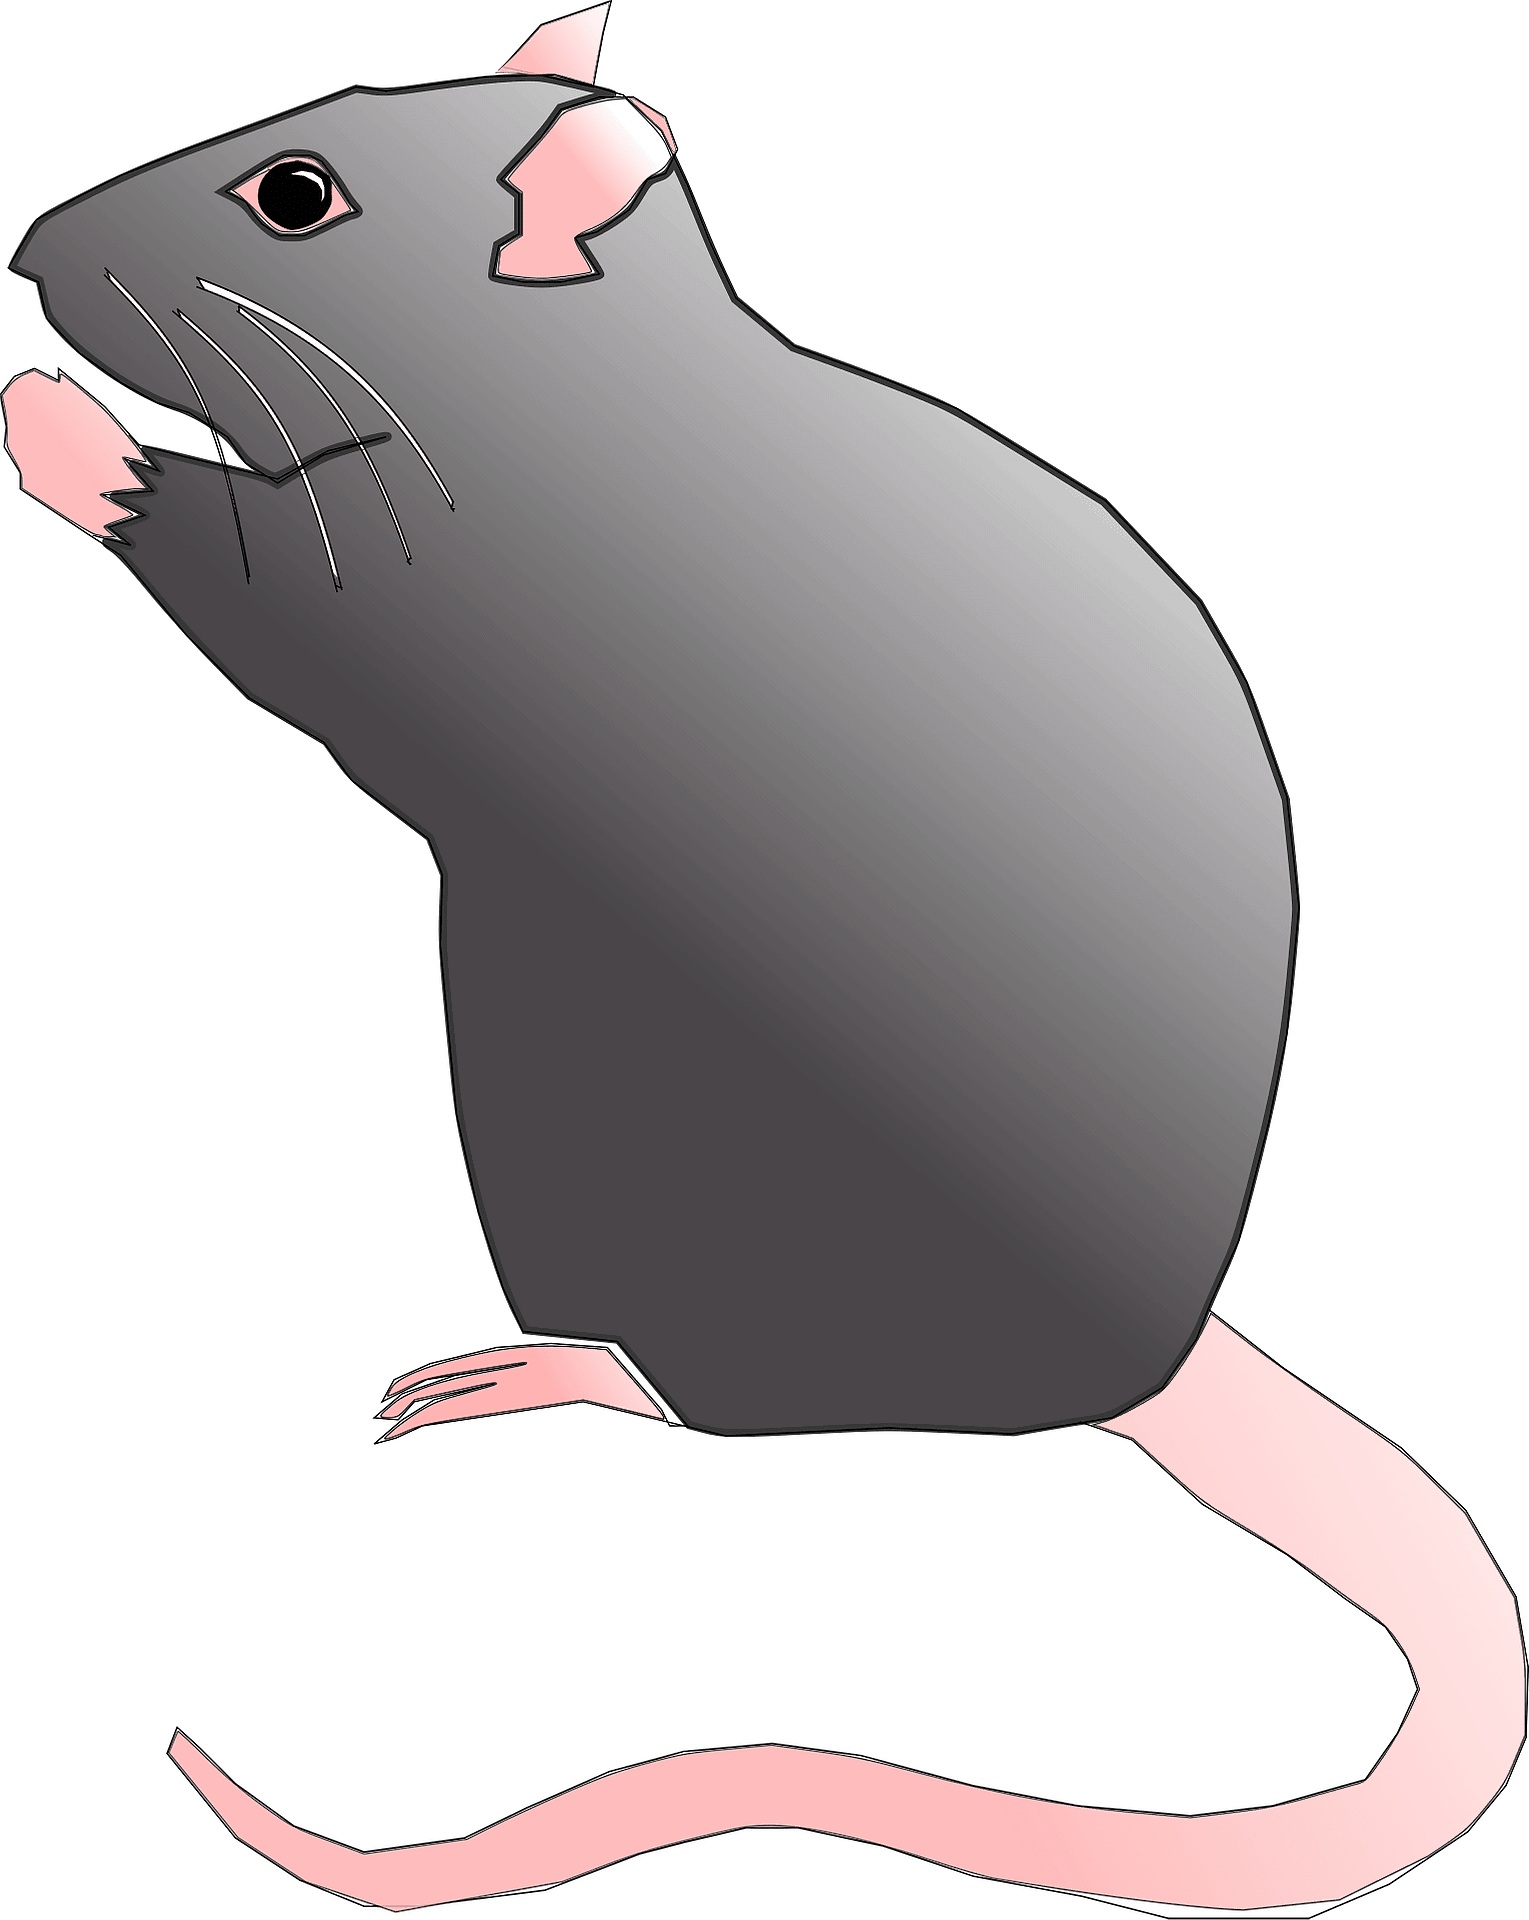 Rat clipart image 2